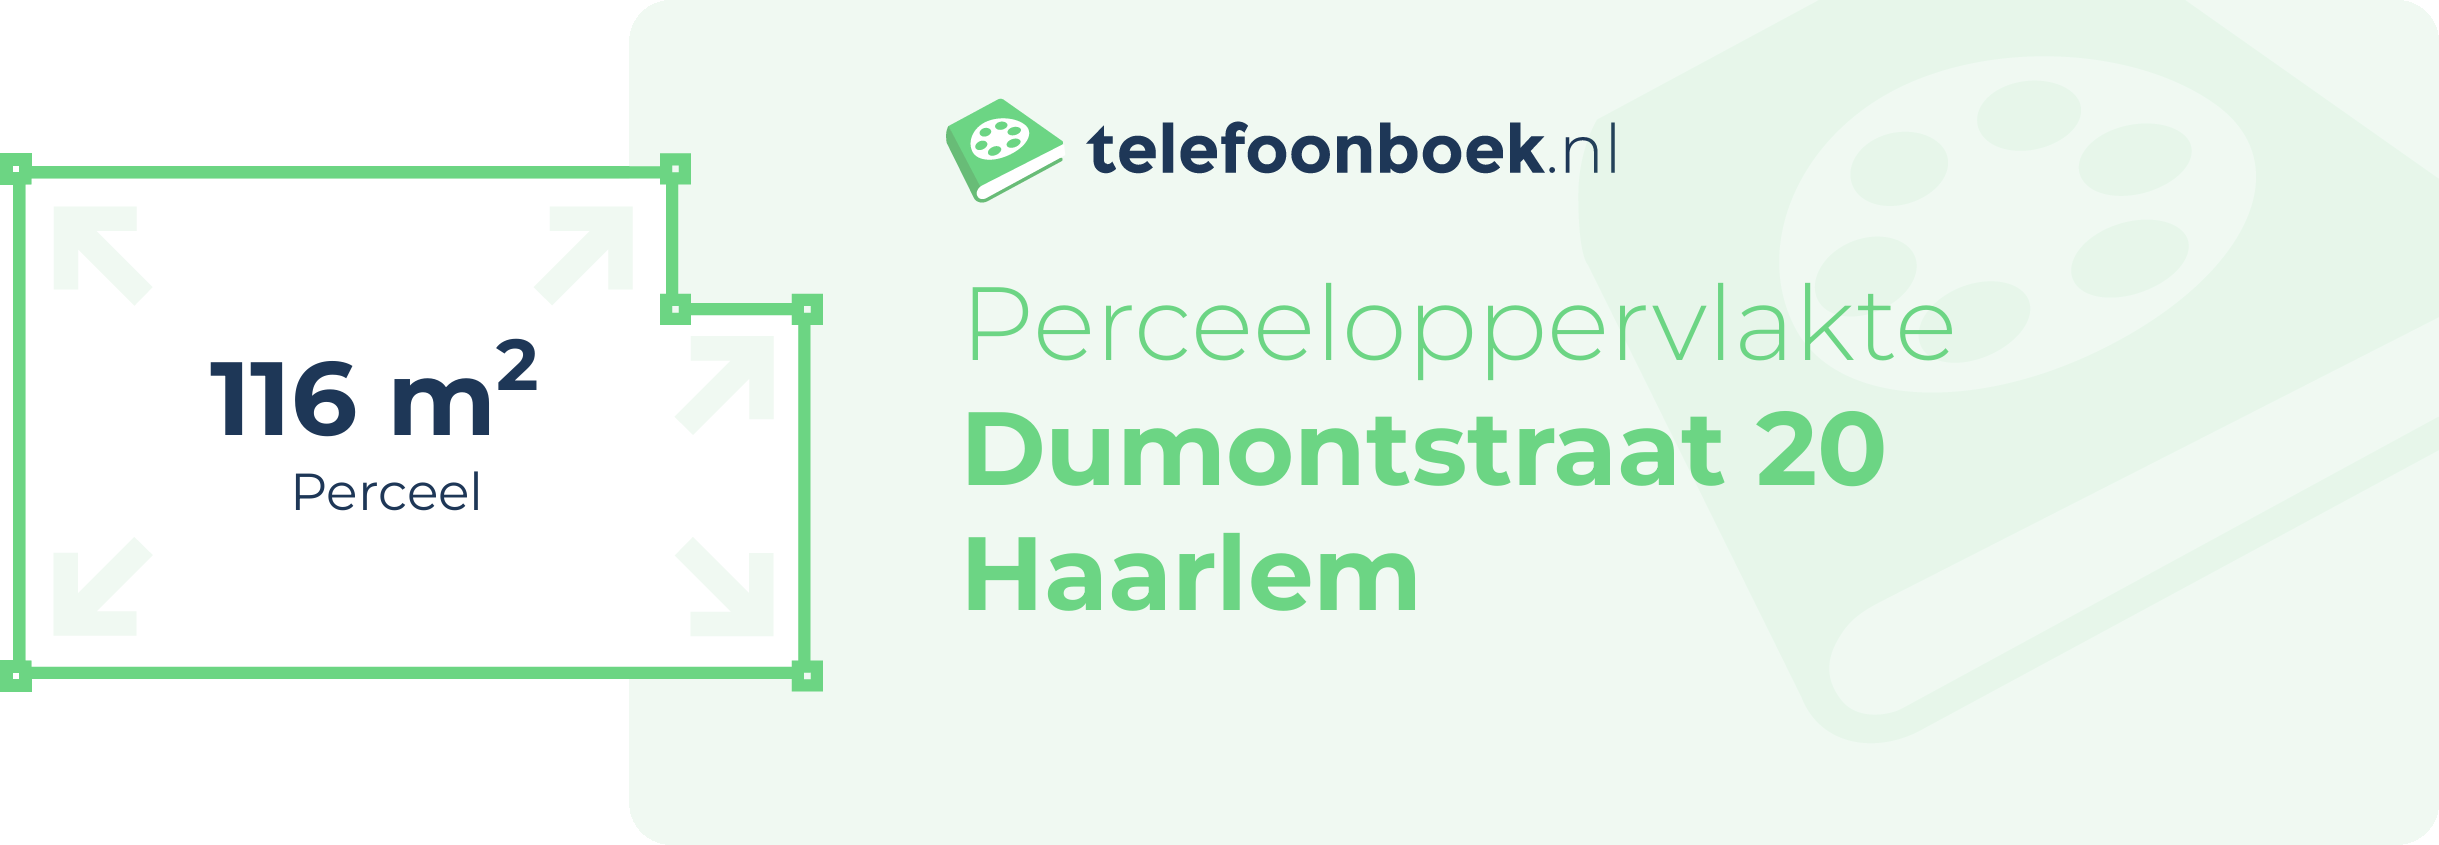 Perceeloppervlakte Dumontstraat 20 Haarlem